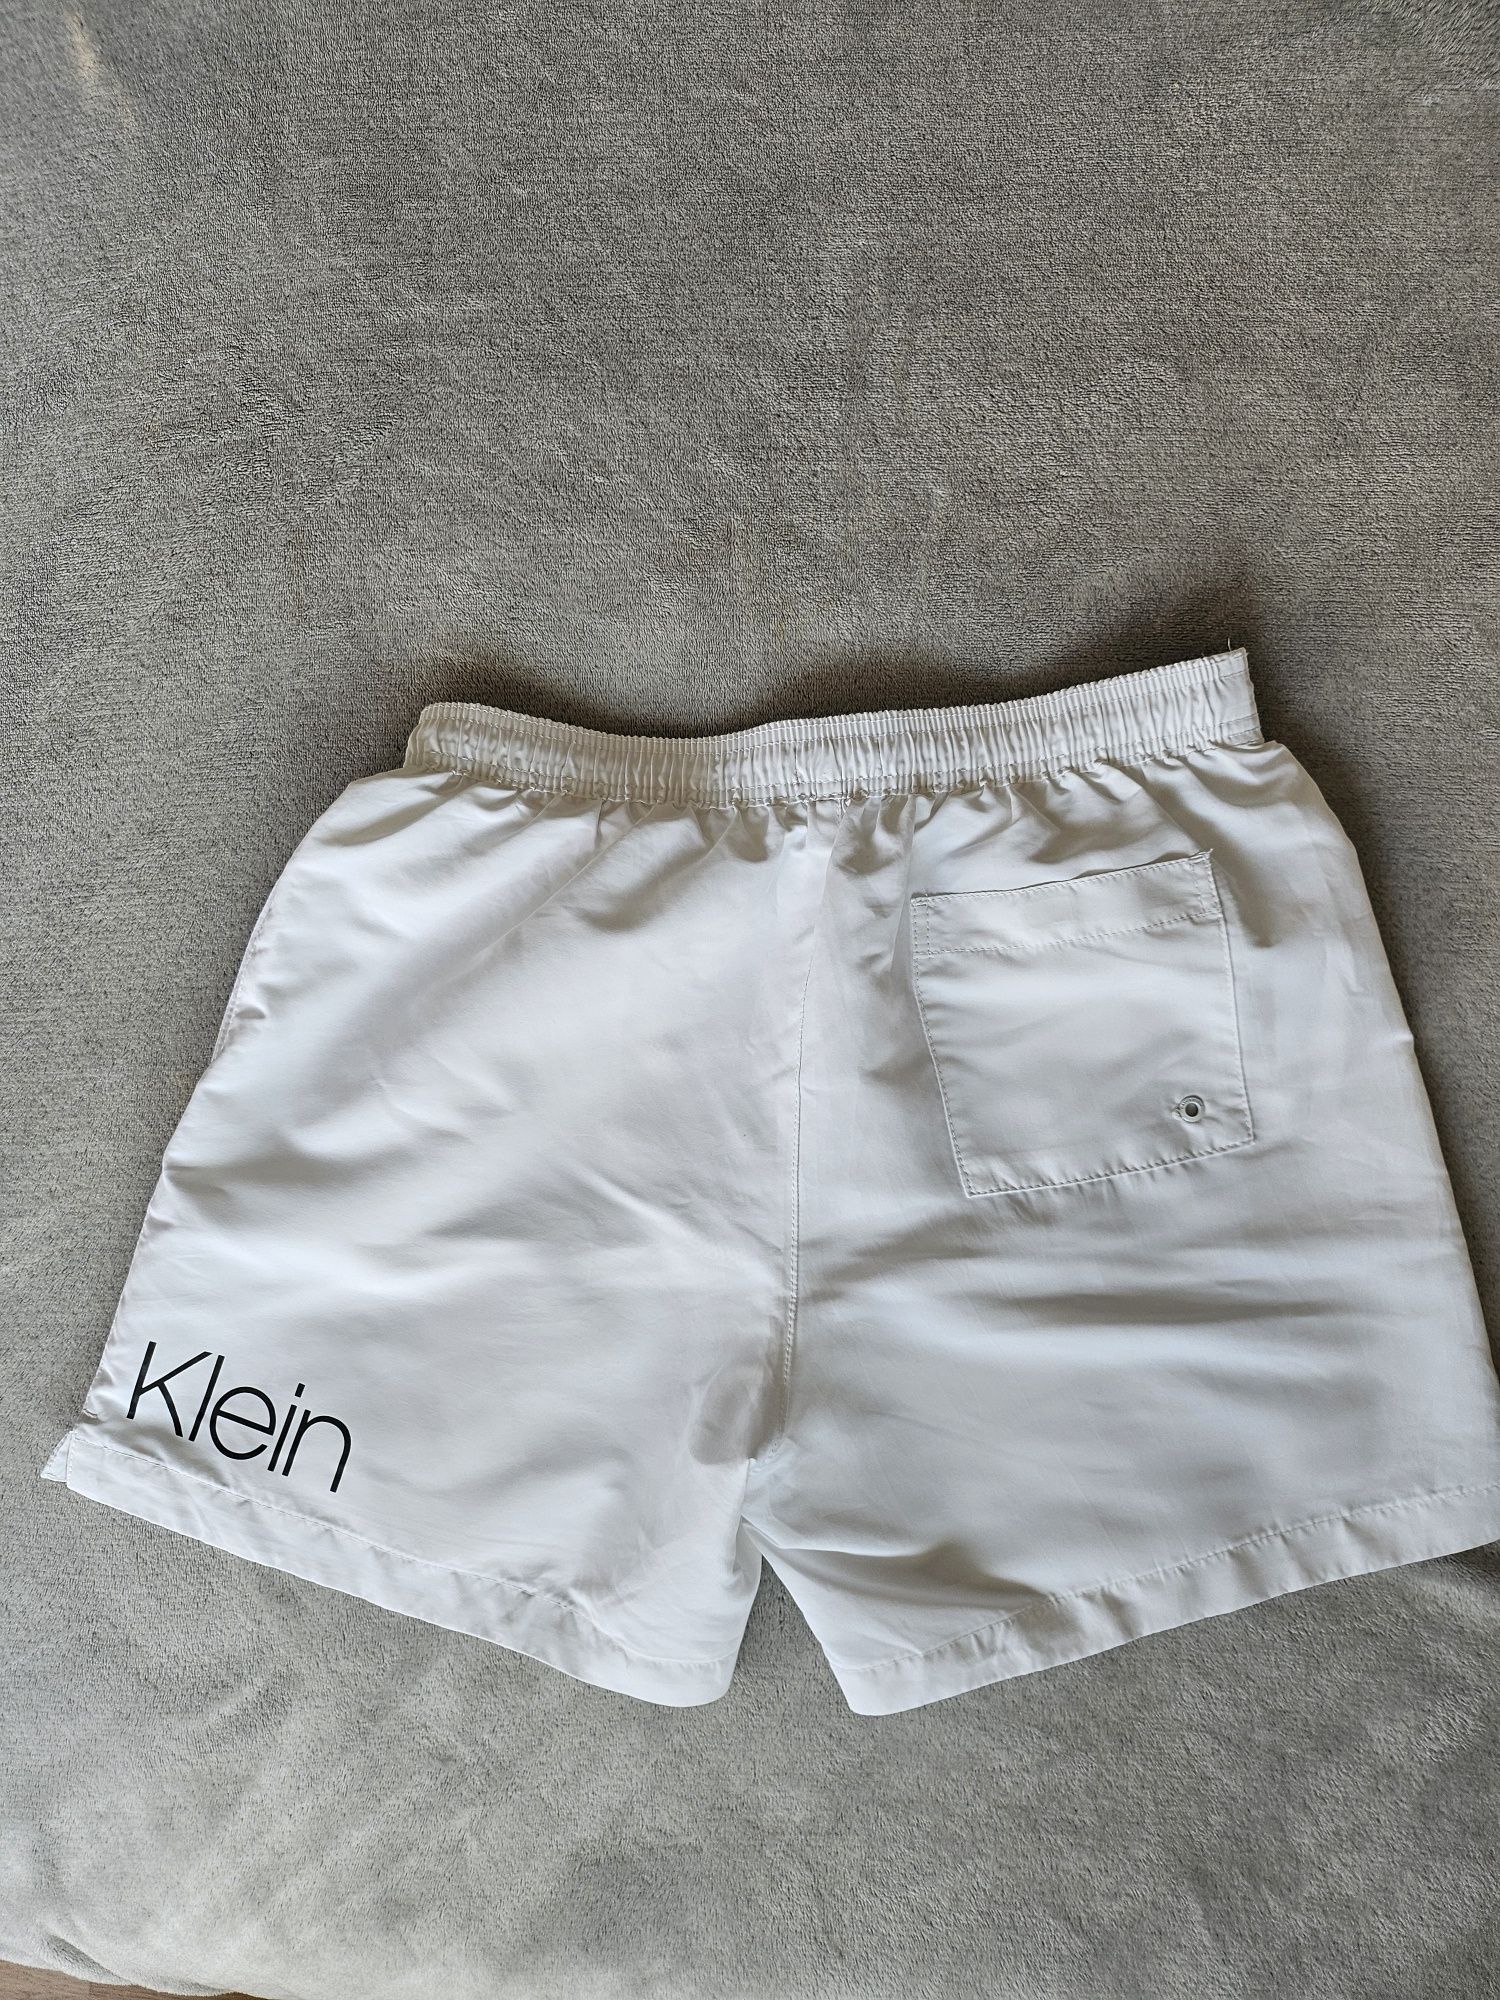 Calvin Klein szorty męskie, spodenki  białe roz.M